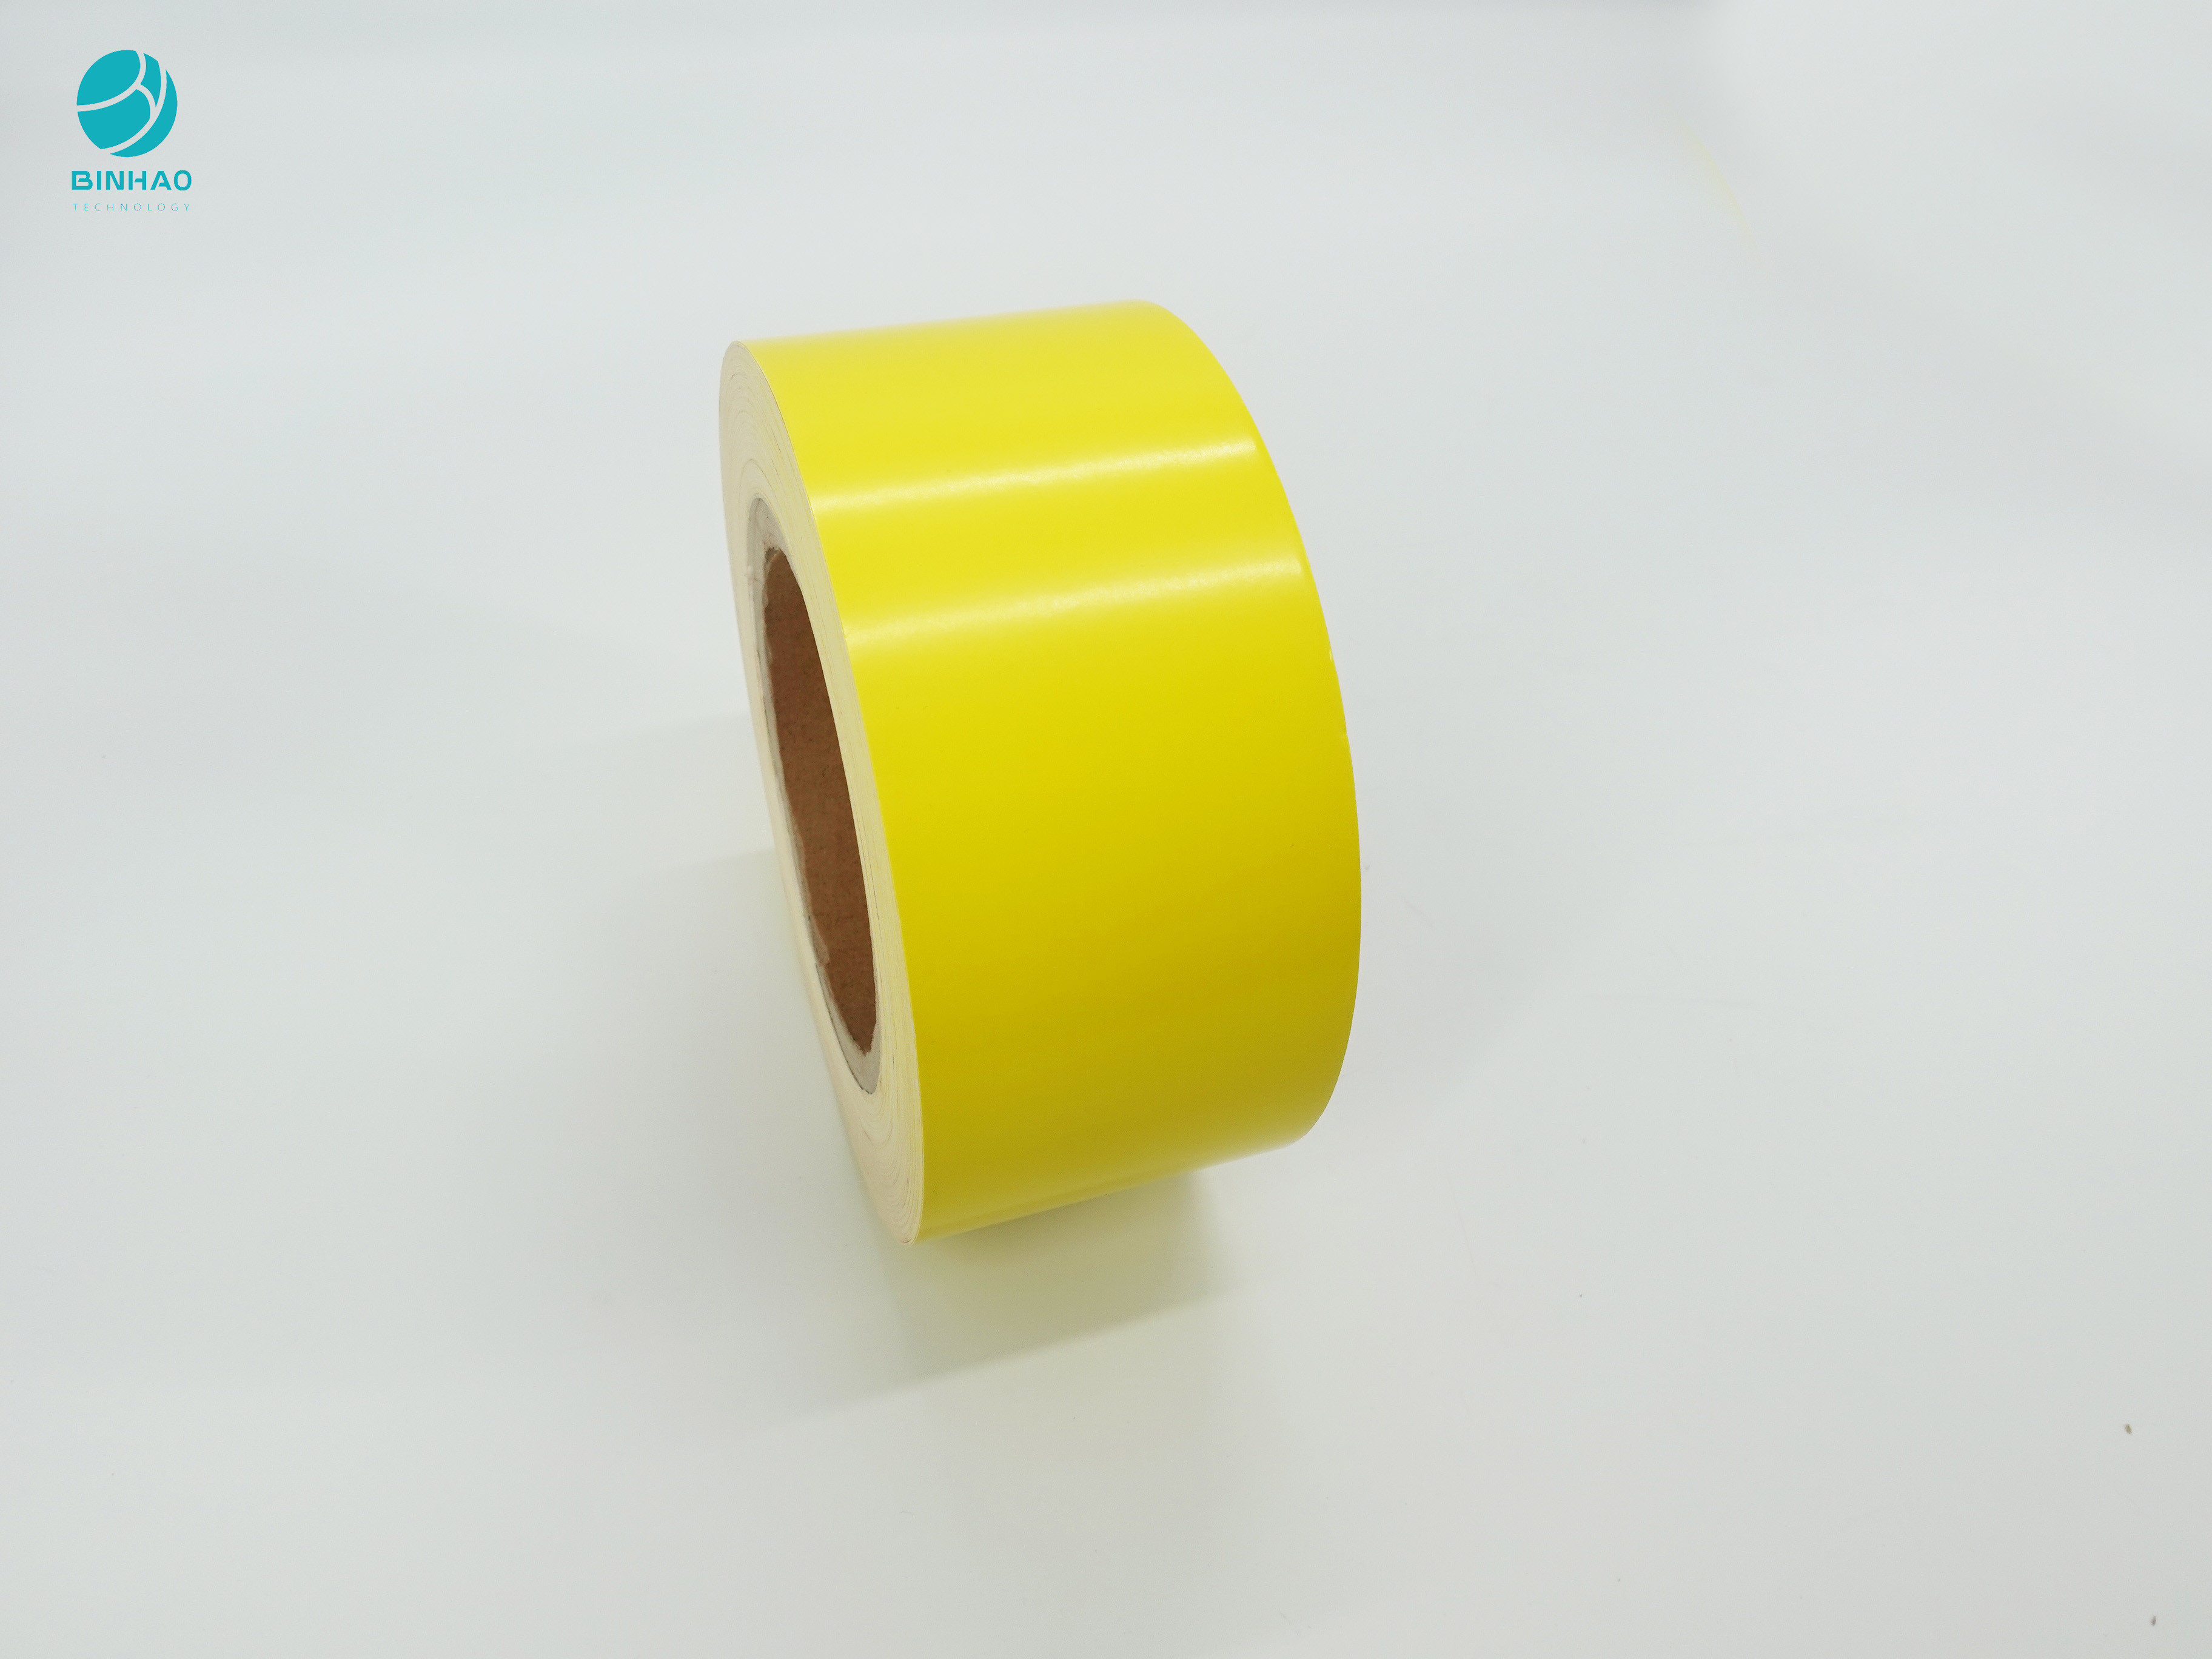 Χαρτόνι 90114mm συσκευασίας τσιγάρων εσωτερικό έγγραφο πλαισίων στο ρόλο με φωτεινό κίτρινο